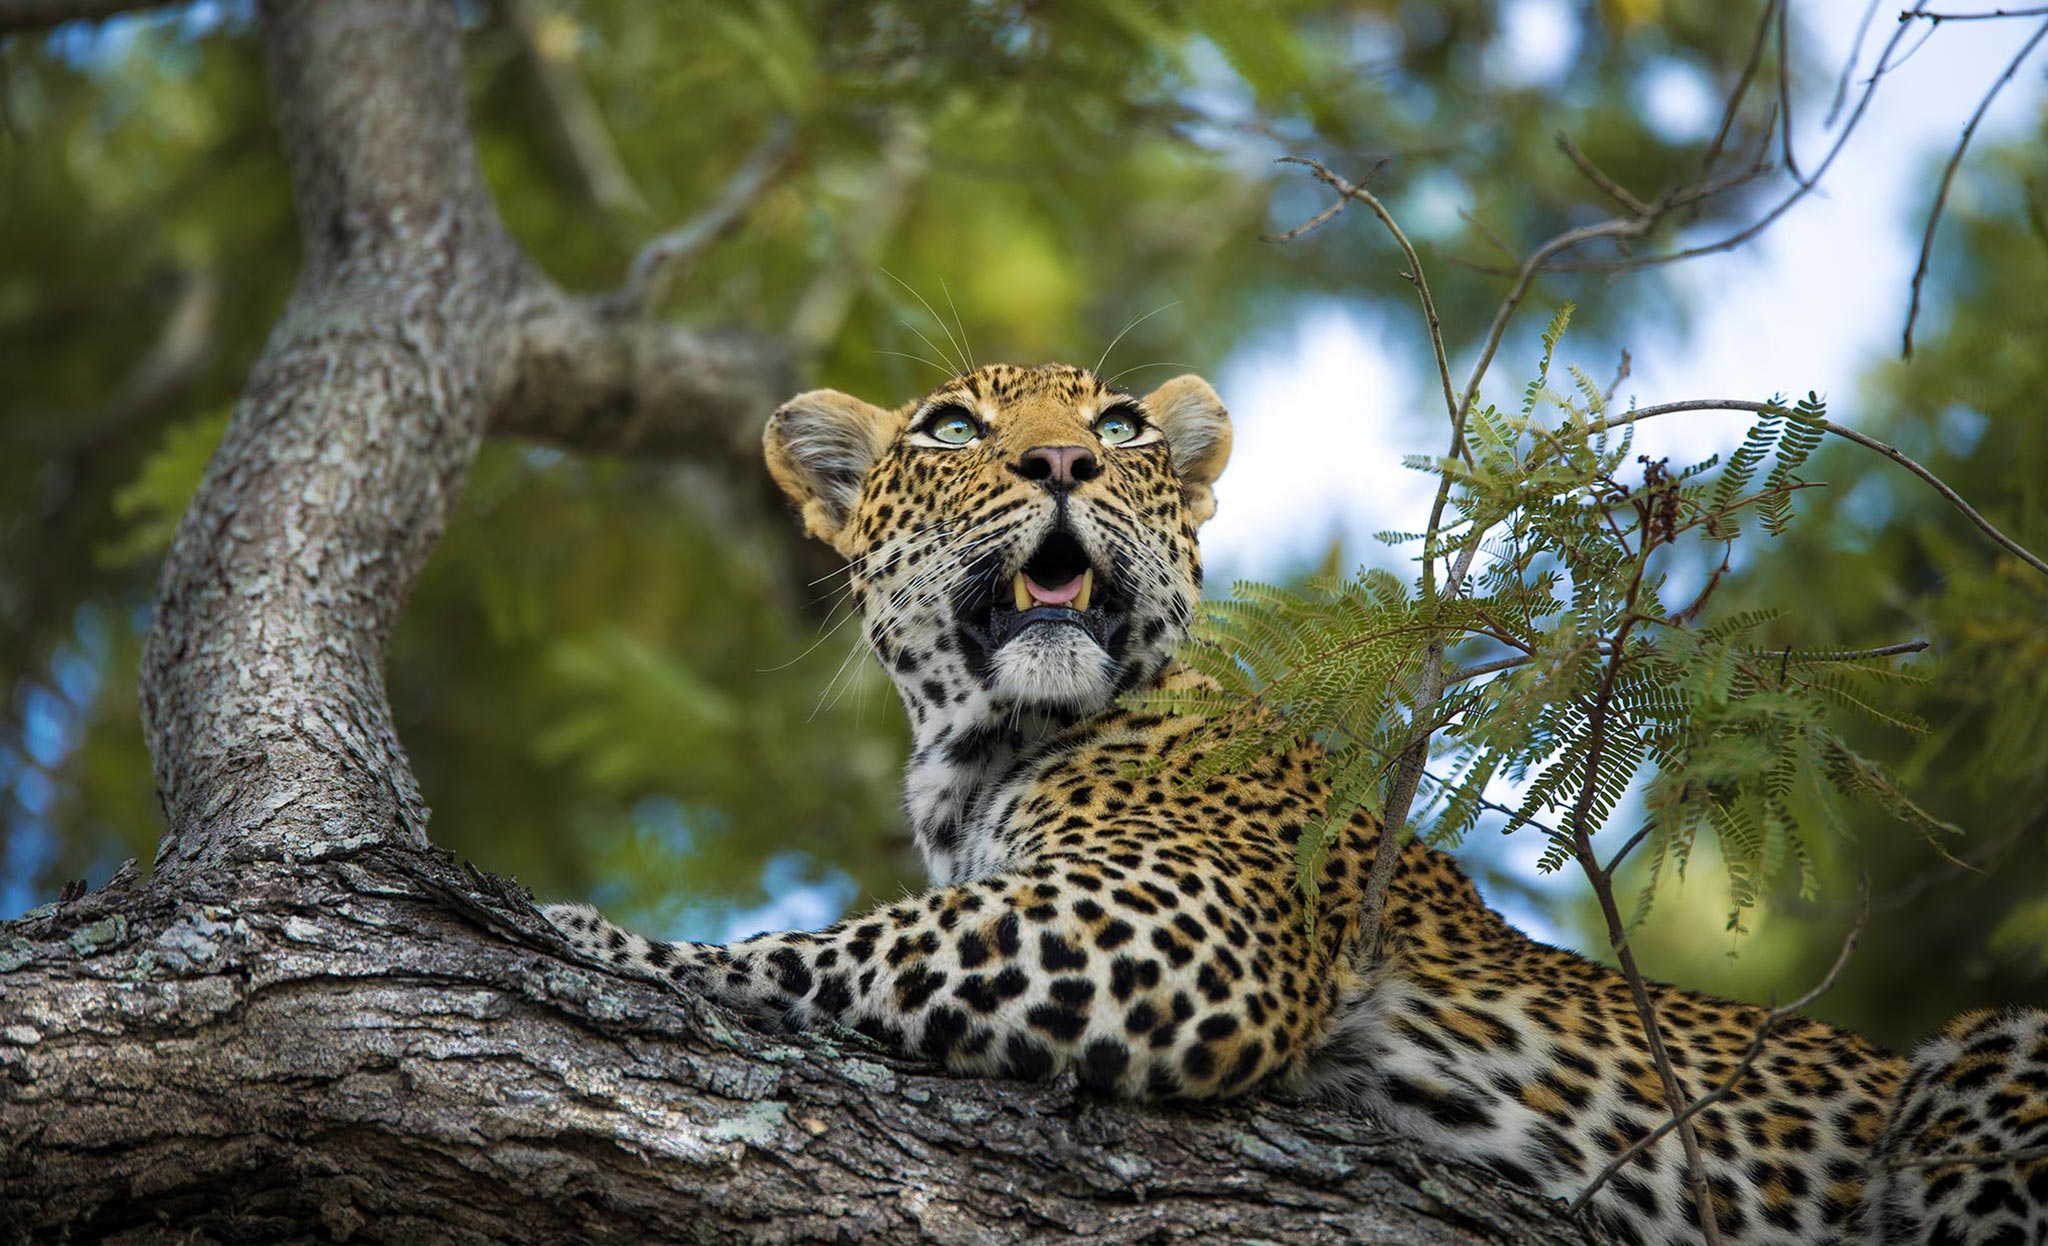 silvan-safaris-wildlife-leopard-in-tree-01.jpg